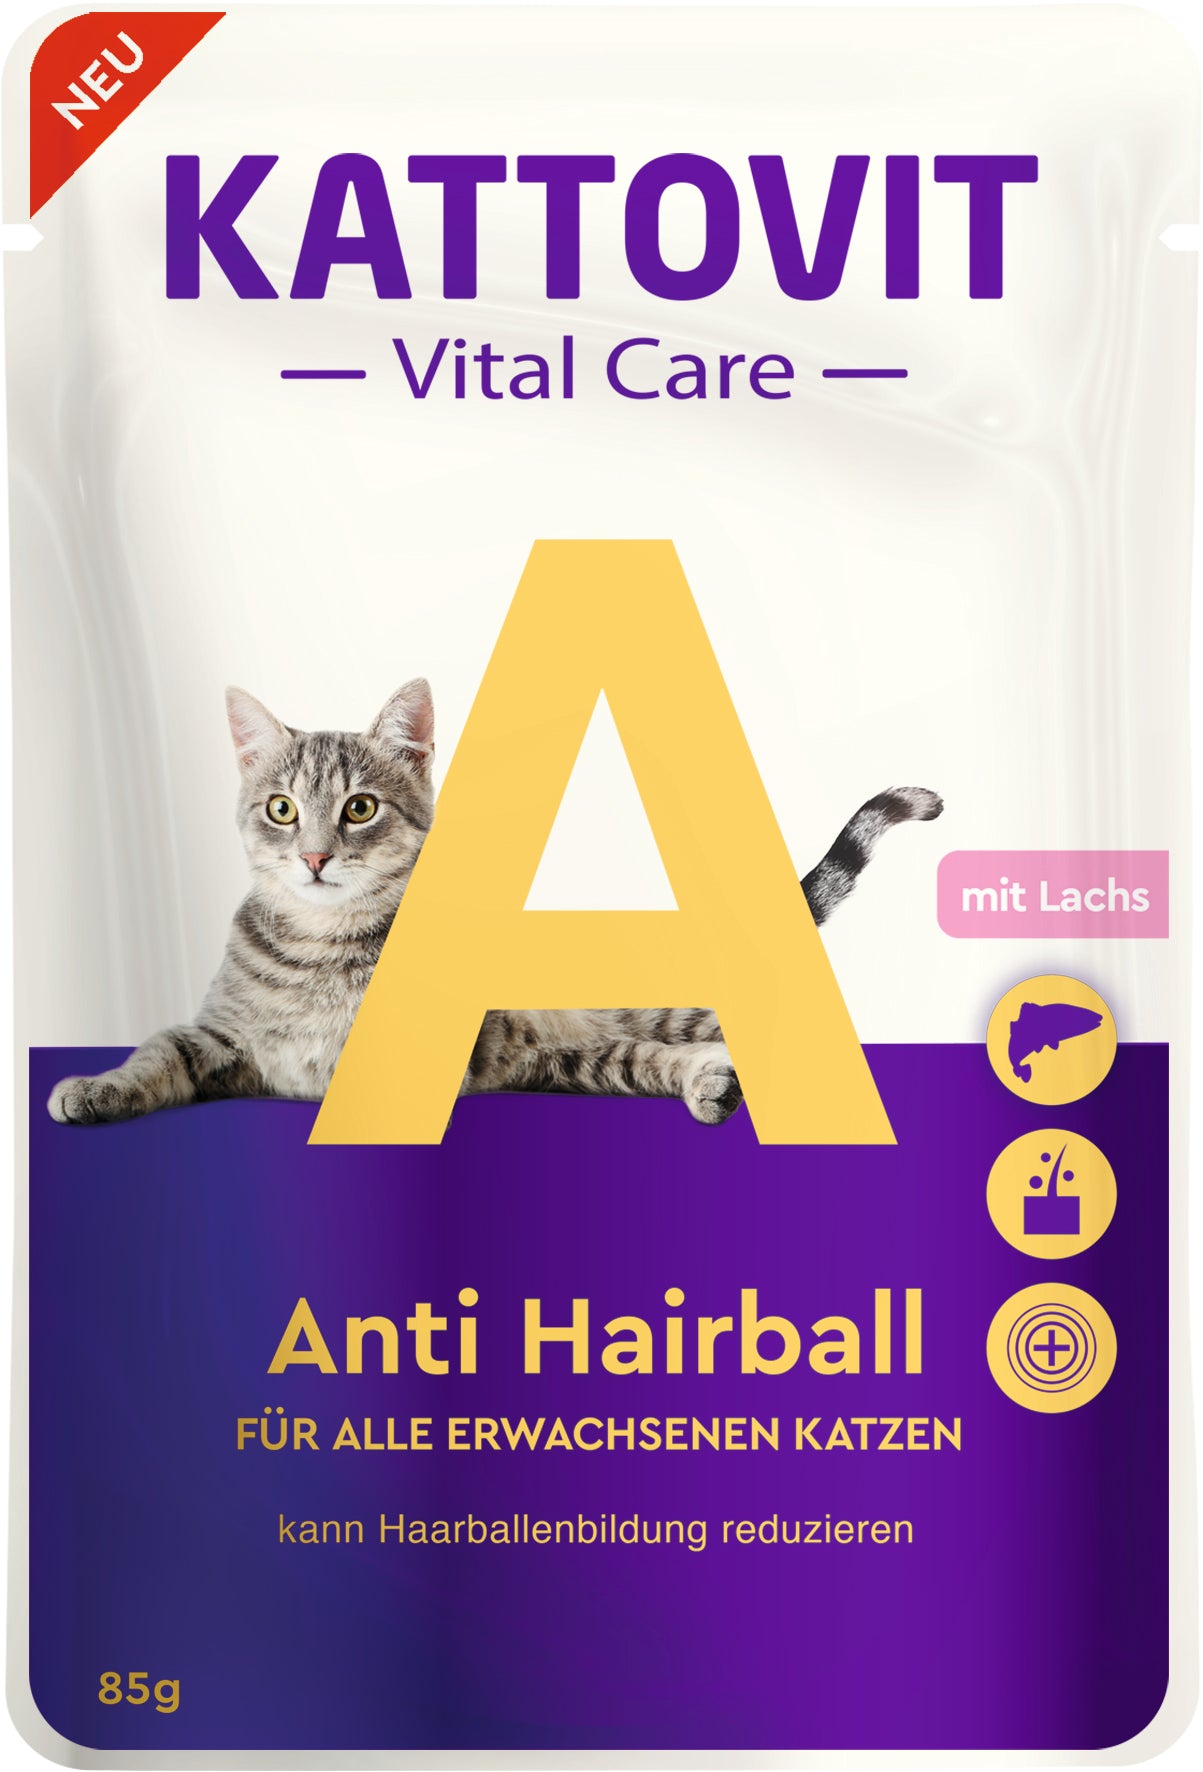 Artikel mit dem Namen Kattovit Pouchbeutel Vital Care Anti Hairball im Shop von zoo.de , dem Onlineshop für nachhaltiges Hundefutter und Katzenfutter.